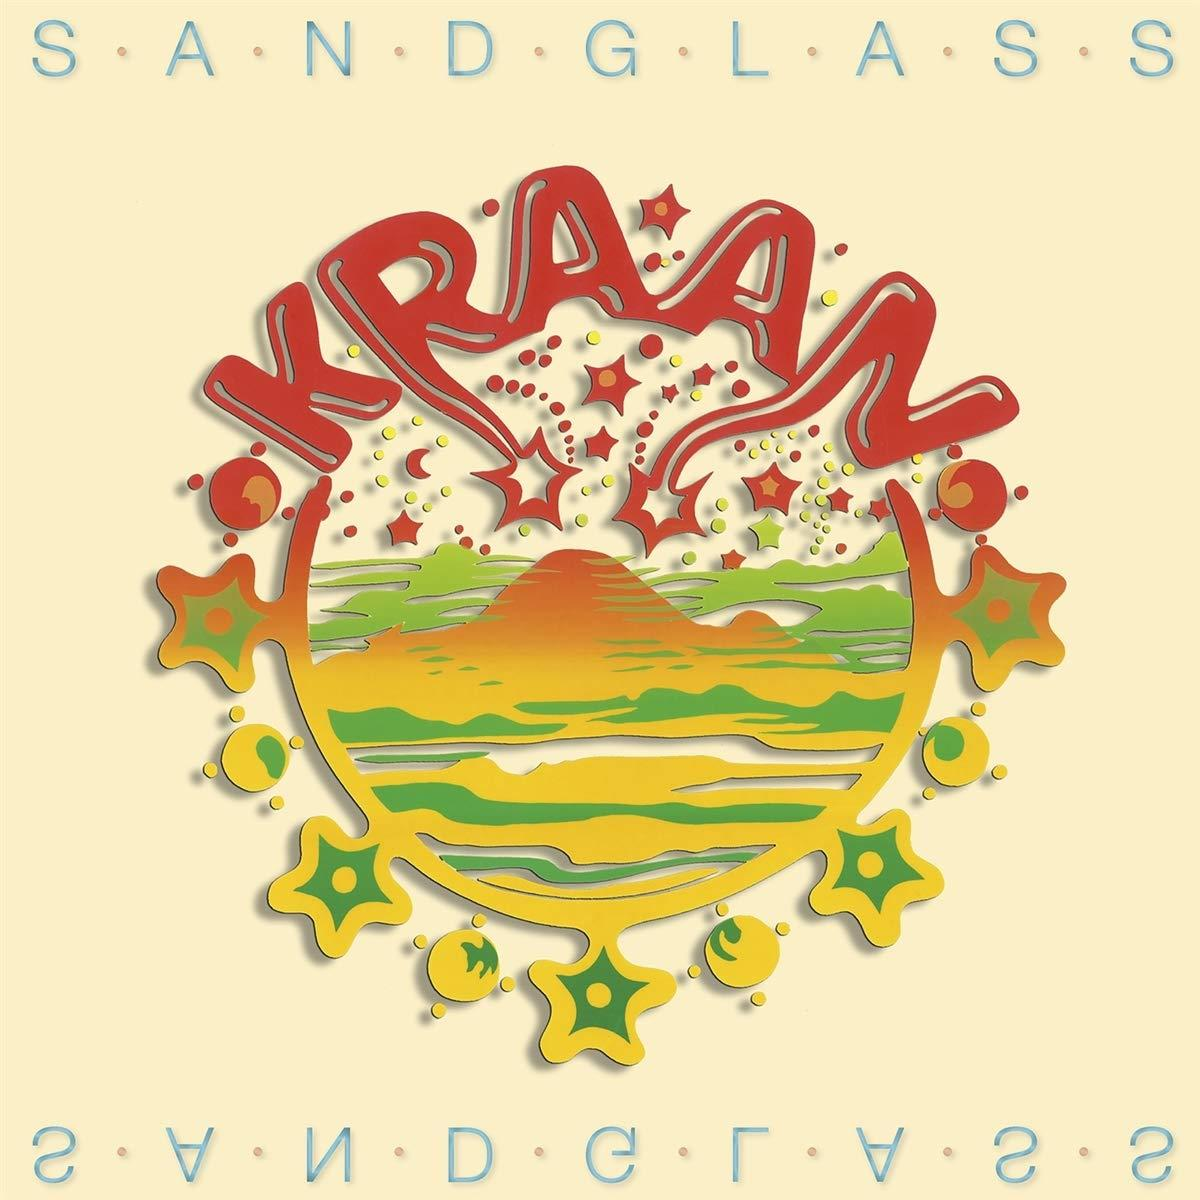 (Vinyl) Kraan SANDGLASS - -